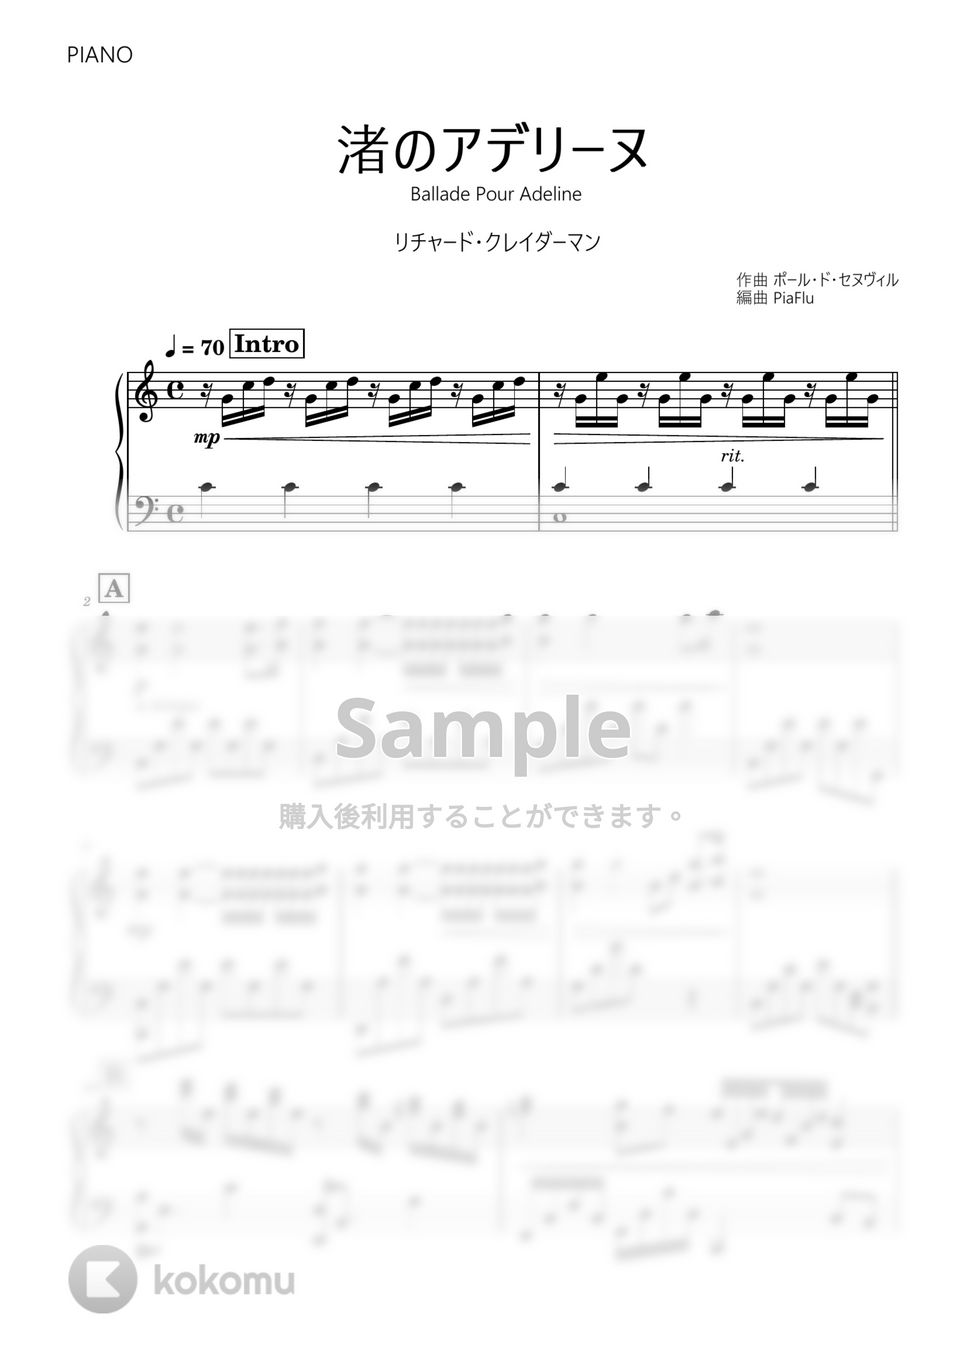 リチャード・クレイダーマン - 渚のアデリーヌ (ピアノ) by PiaFlu